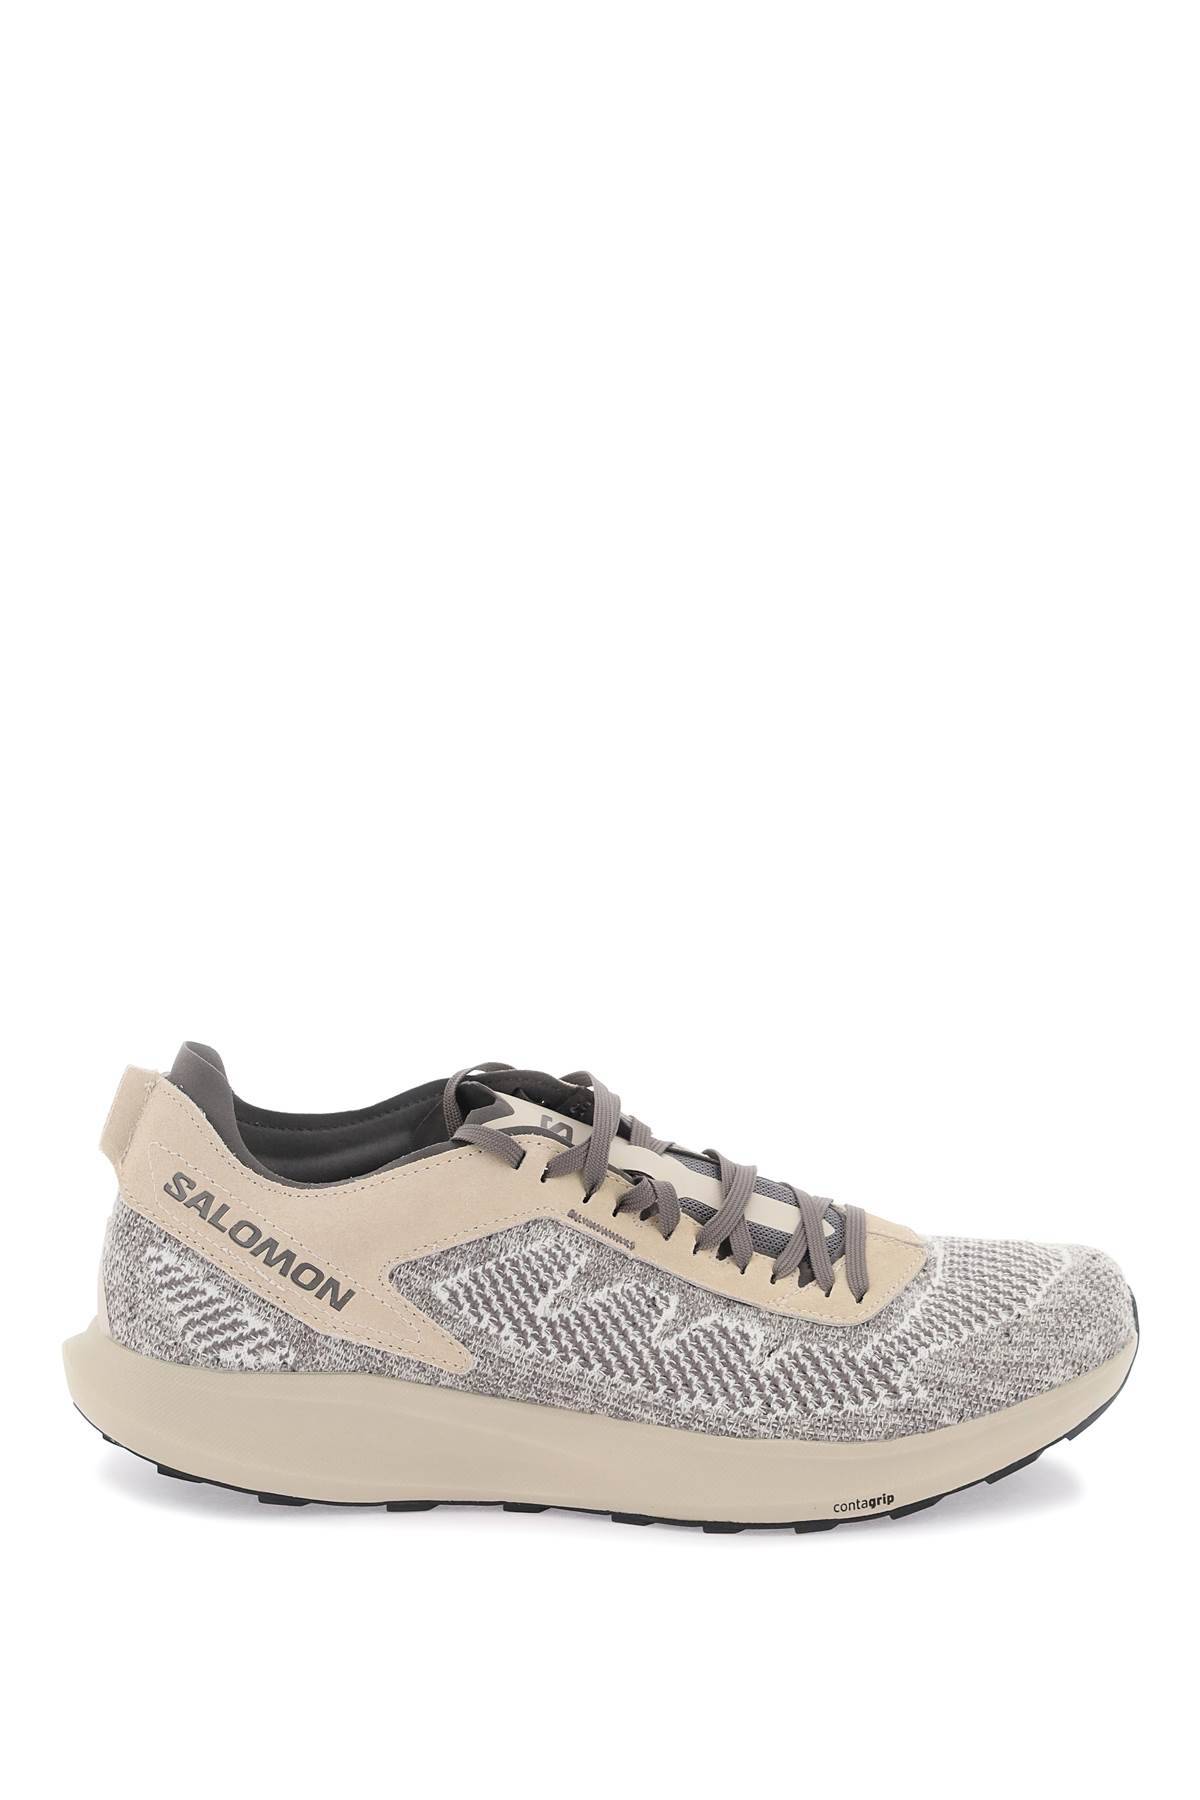 Shop Salomon Pulsar Prg Sneakers In Beige,grey